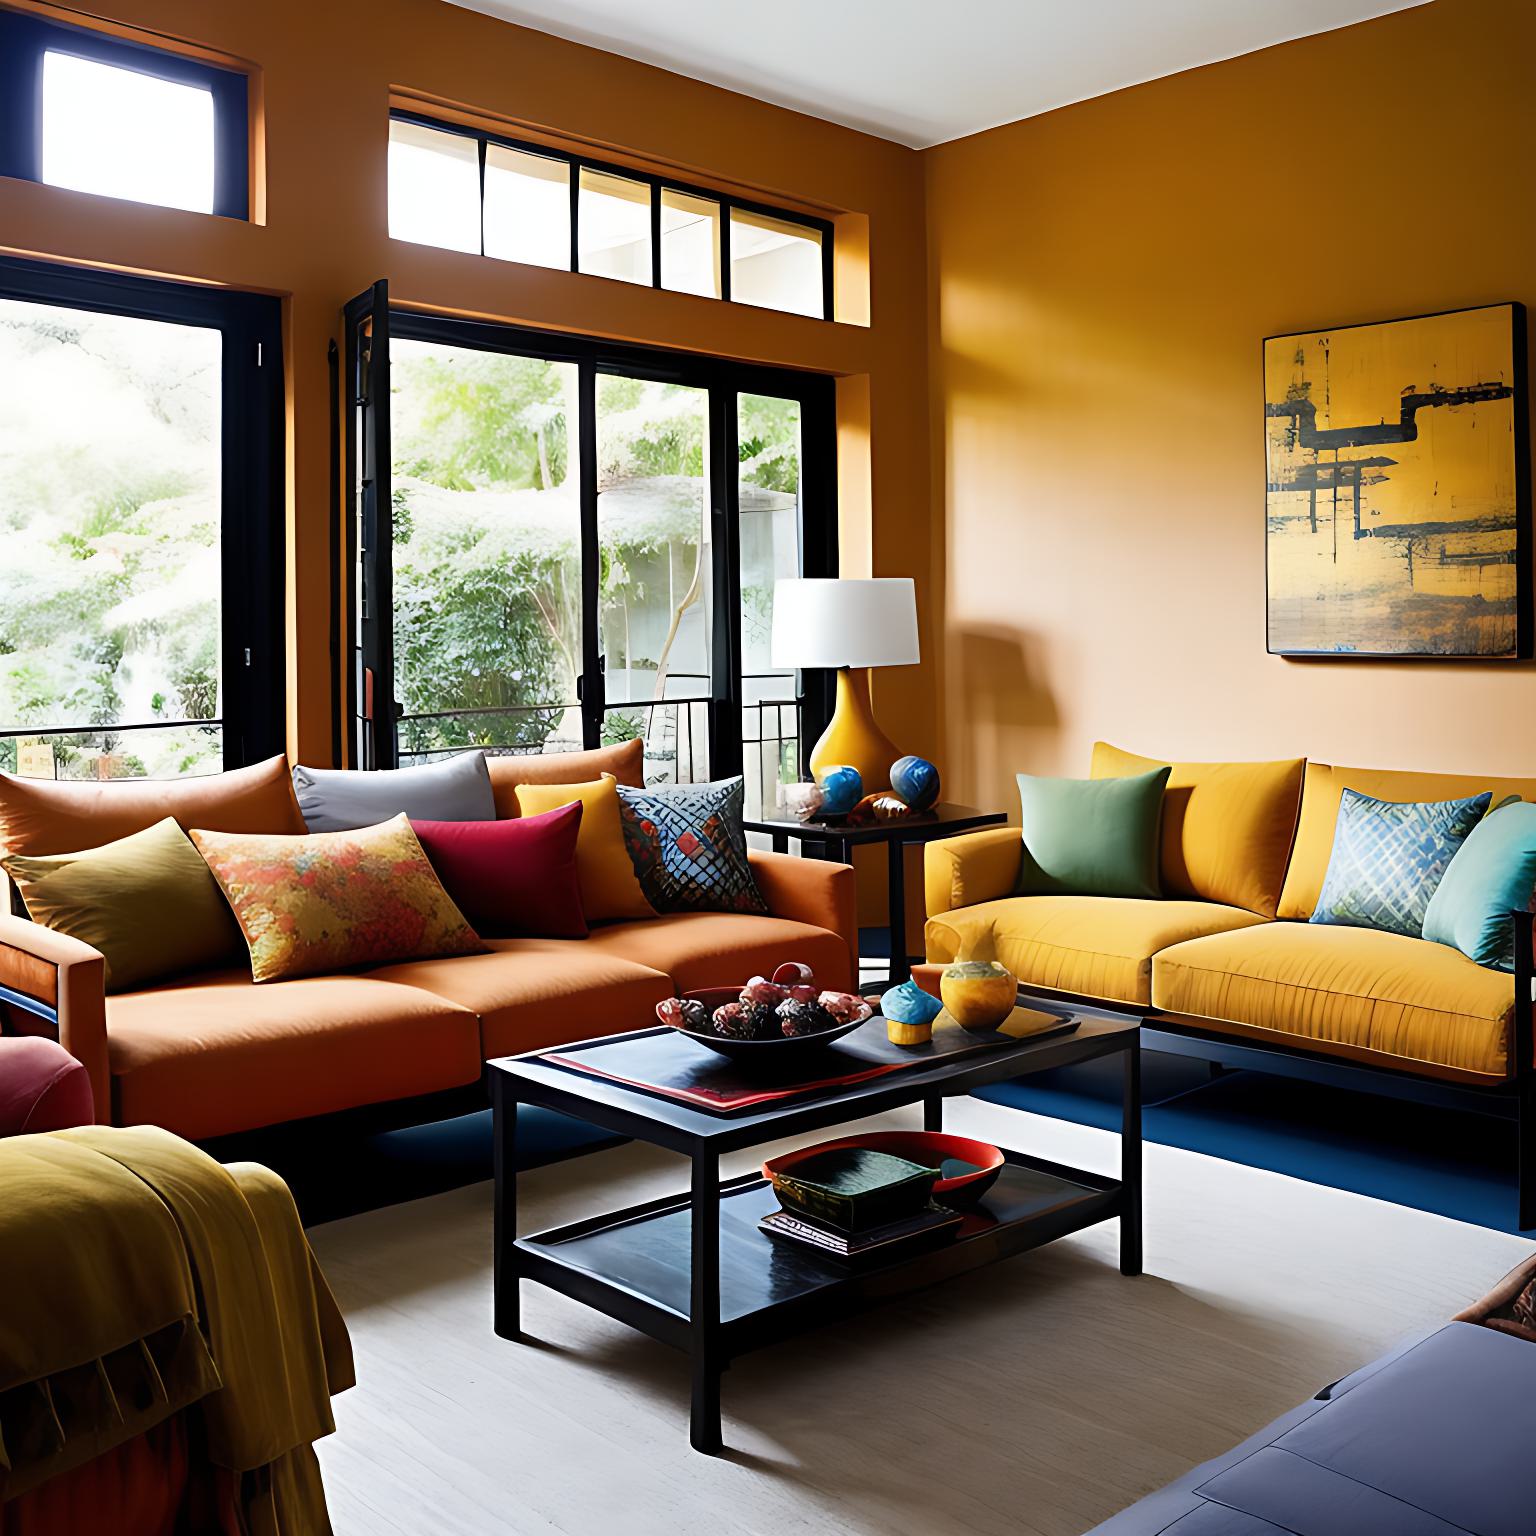 Des coussins de couleurs différentes ornent les deux canapés de ce grand salon